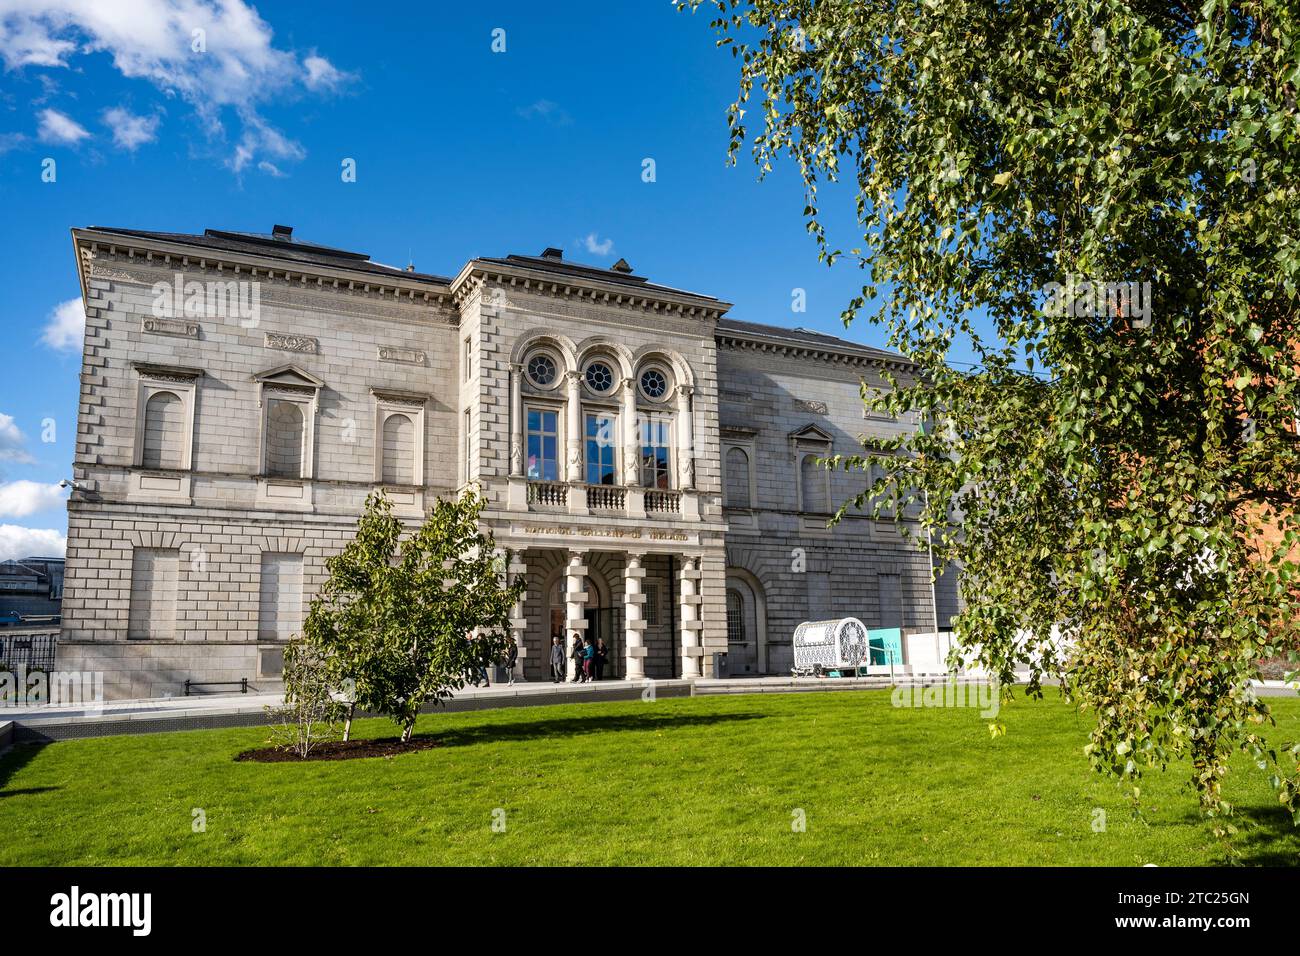 Facciata della National Gallery of Ireland, galleria d'arte con opere d'arte europee e irlandesi dall'epoca medievale a quella contemporanea, nel centro di Dublino, in Irlanda Foto Stock